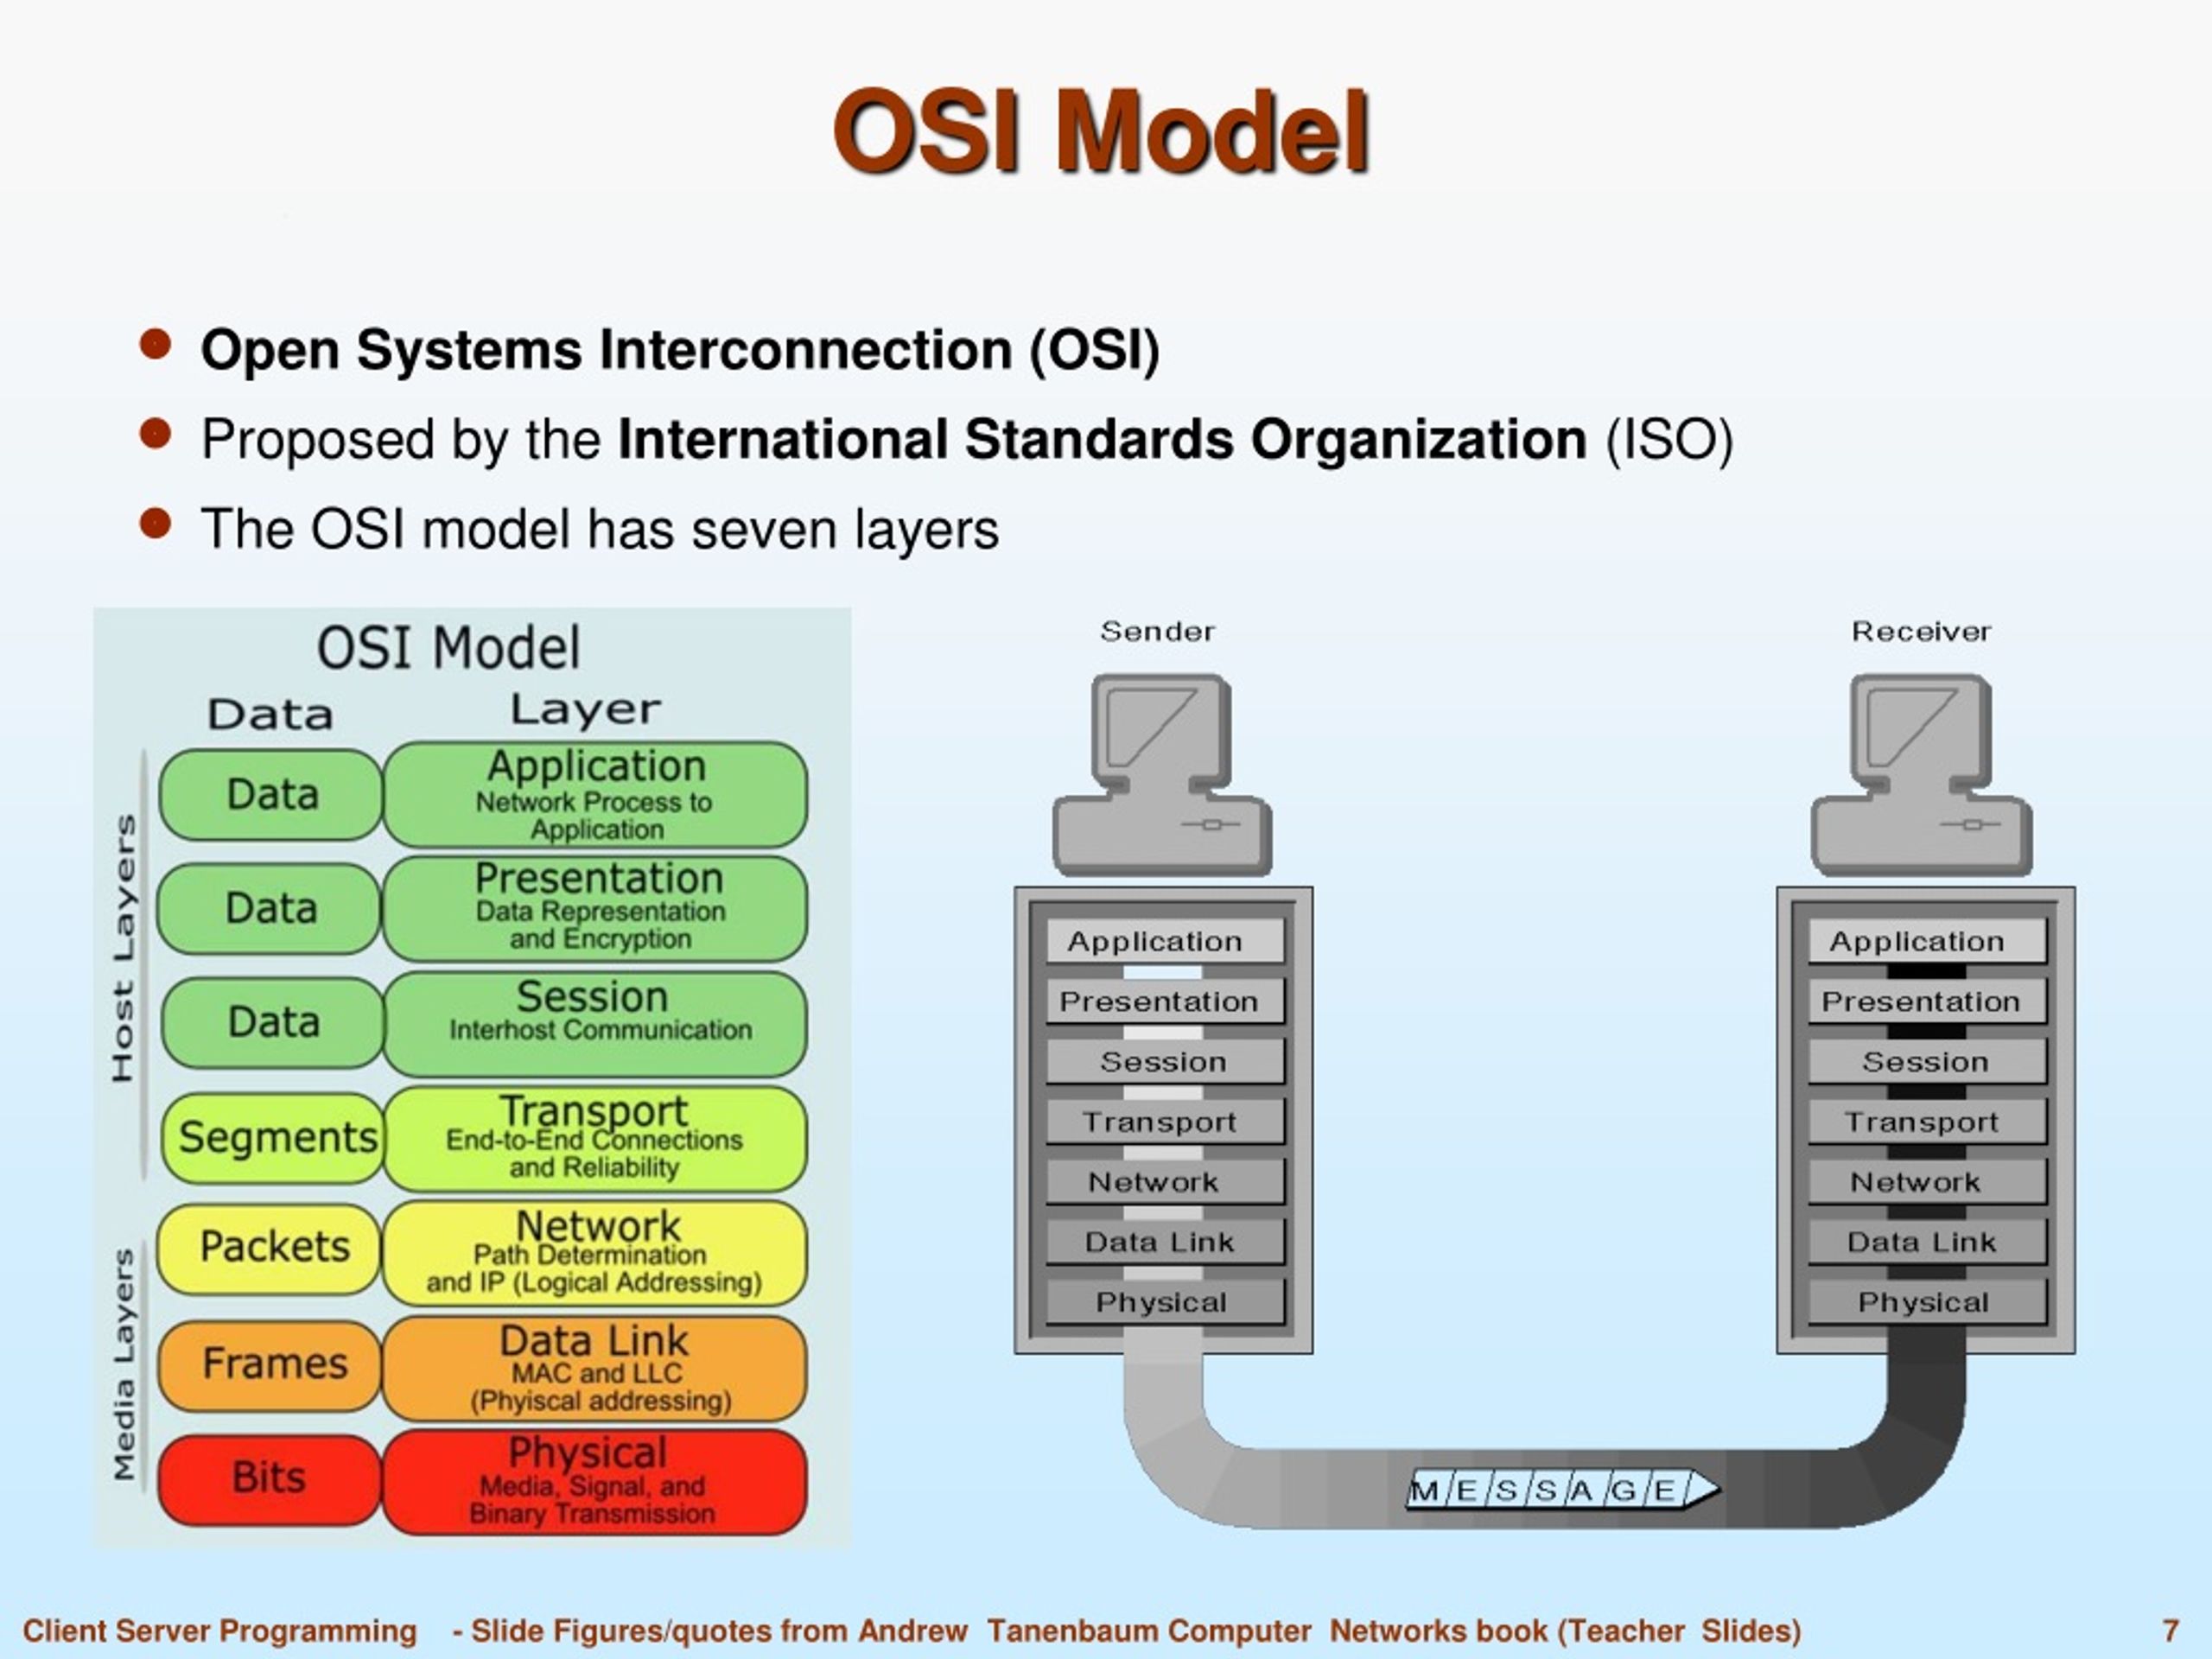 Функции модели osi. Модель оси 7 уровней. Модель osi - open Systems interconnection. Модель оси l2. 7ми уровневая модель osi.